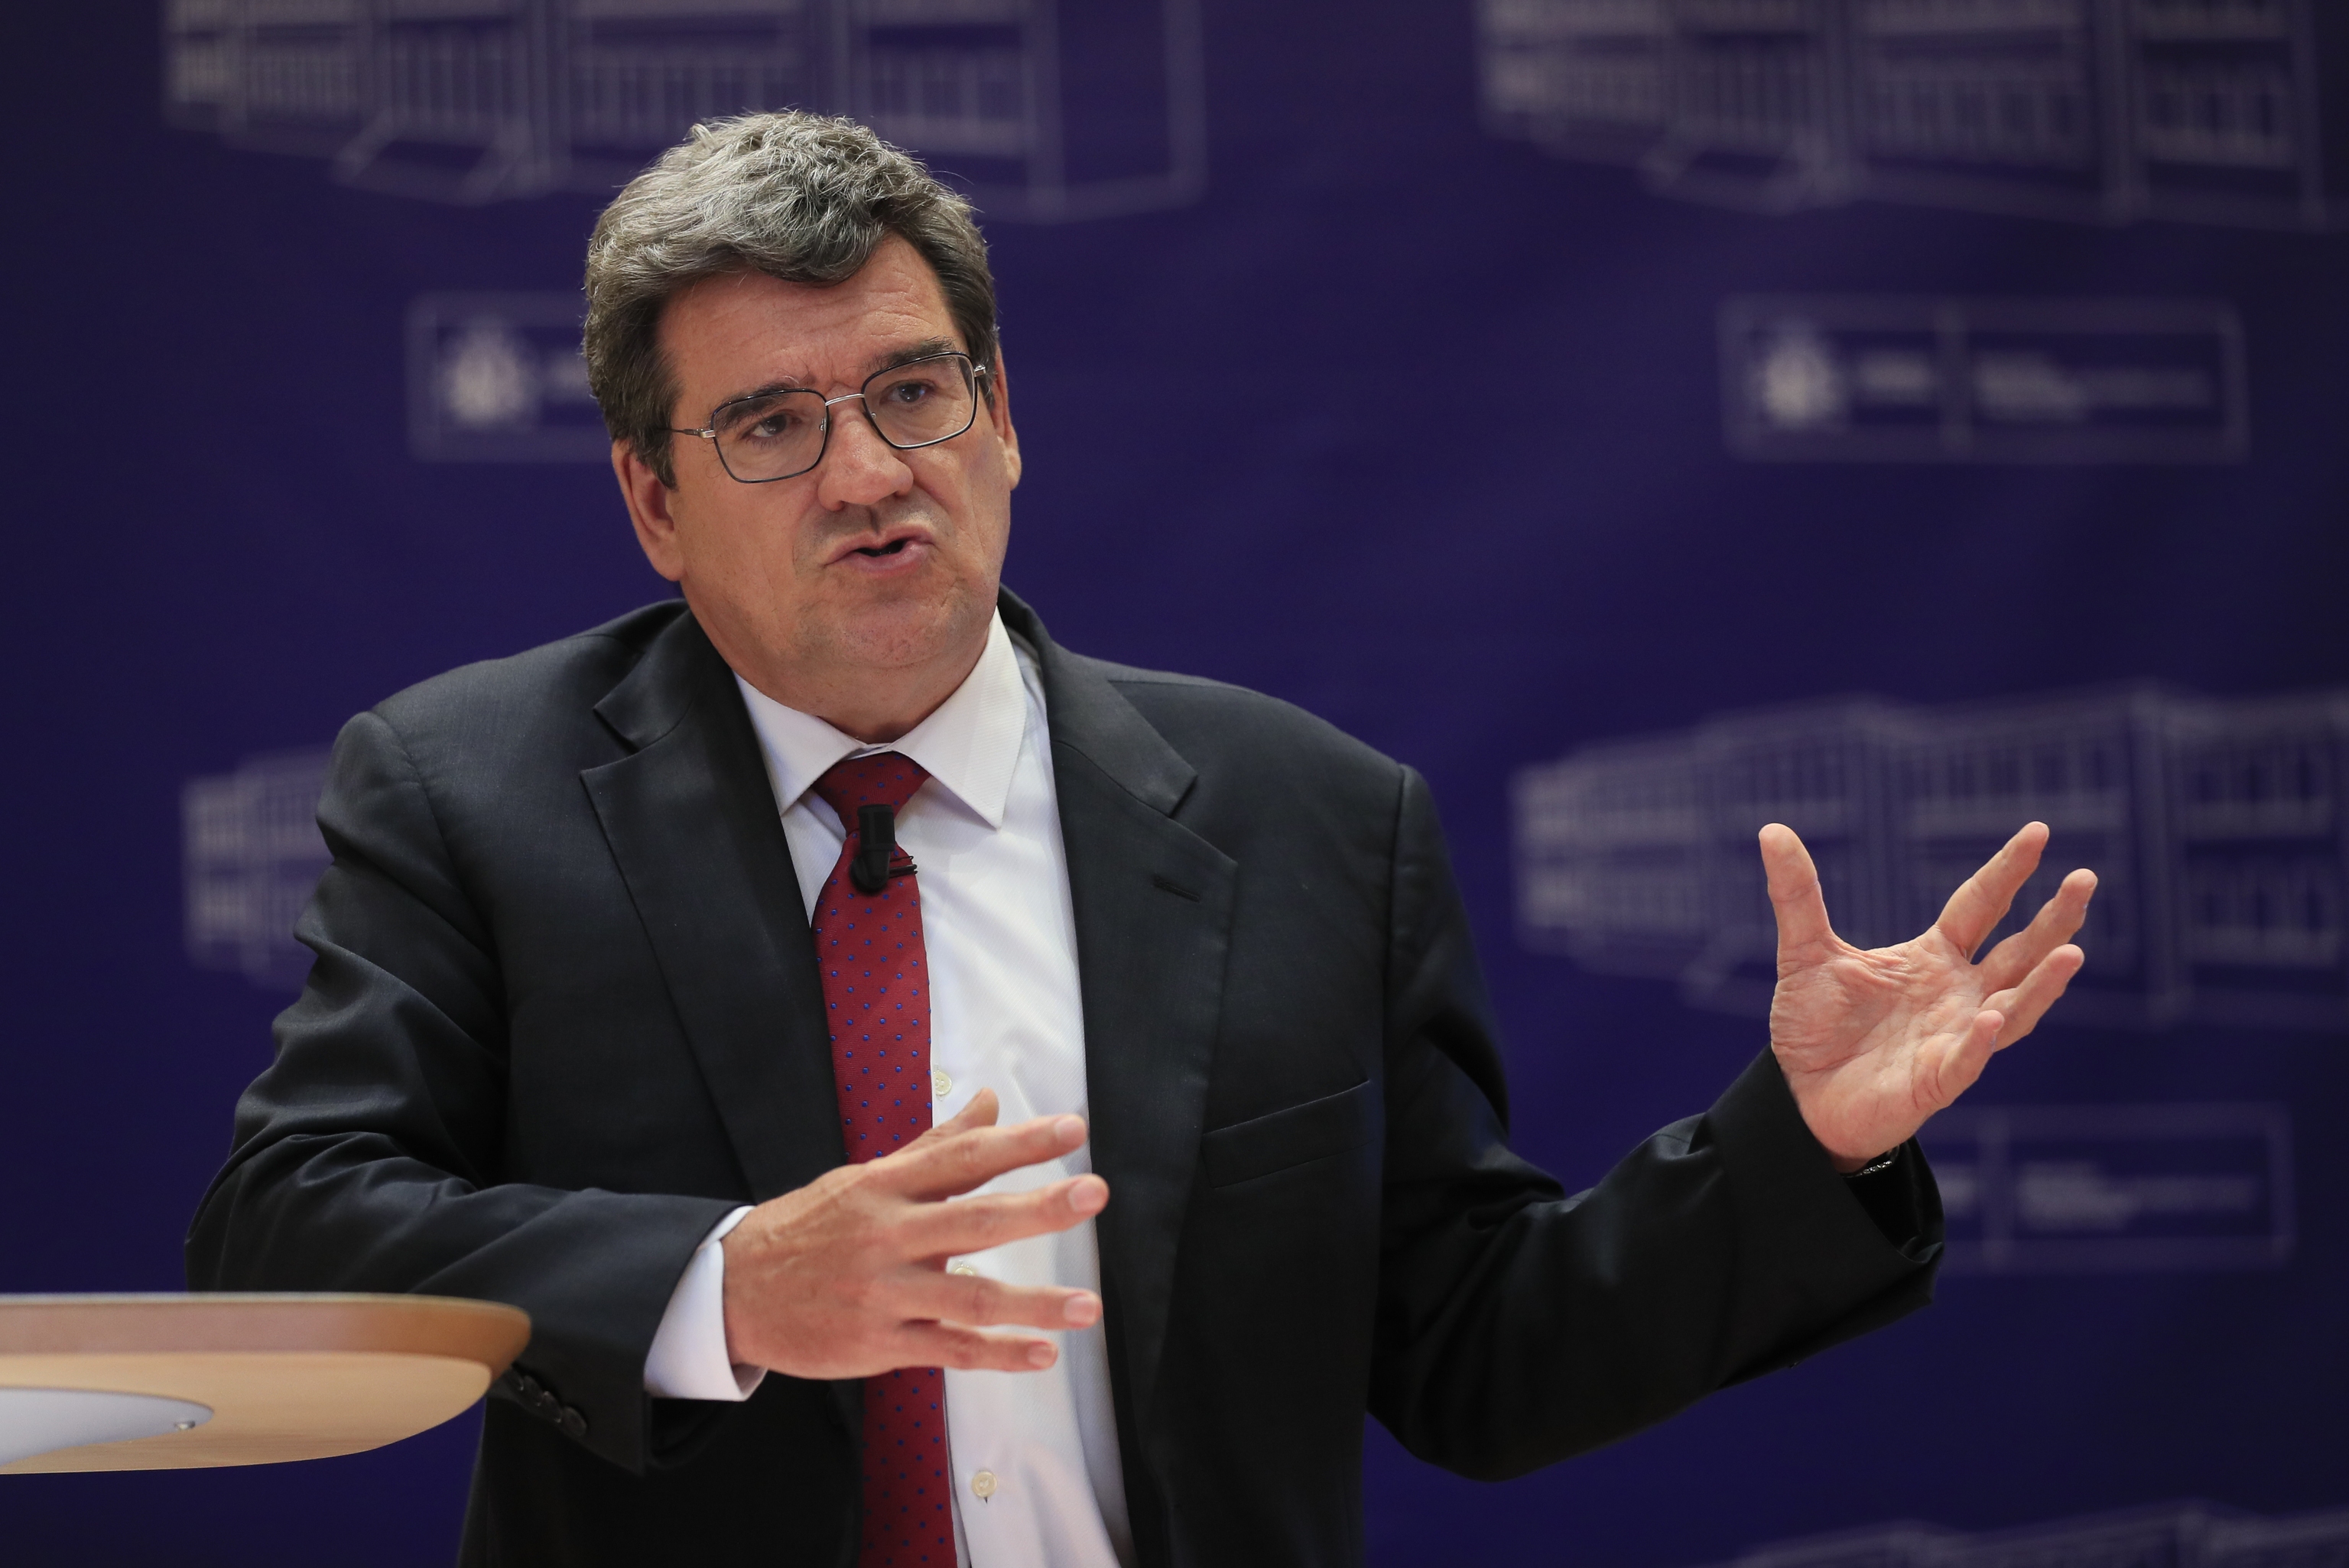 El ministro de Seguridad Social, José Luis Escrivá.